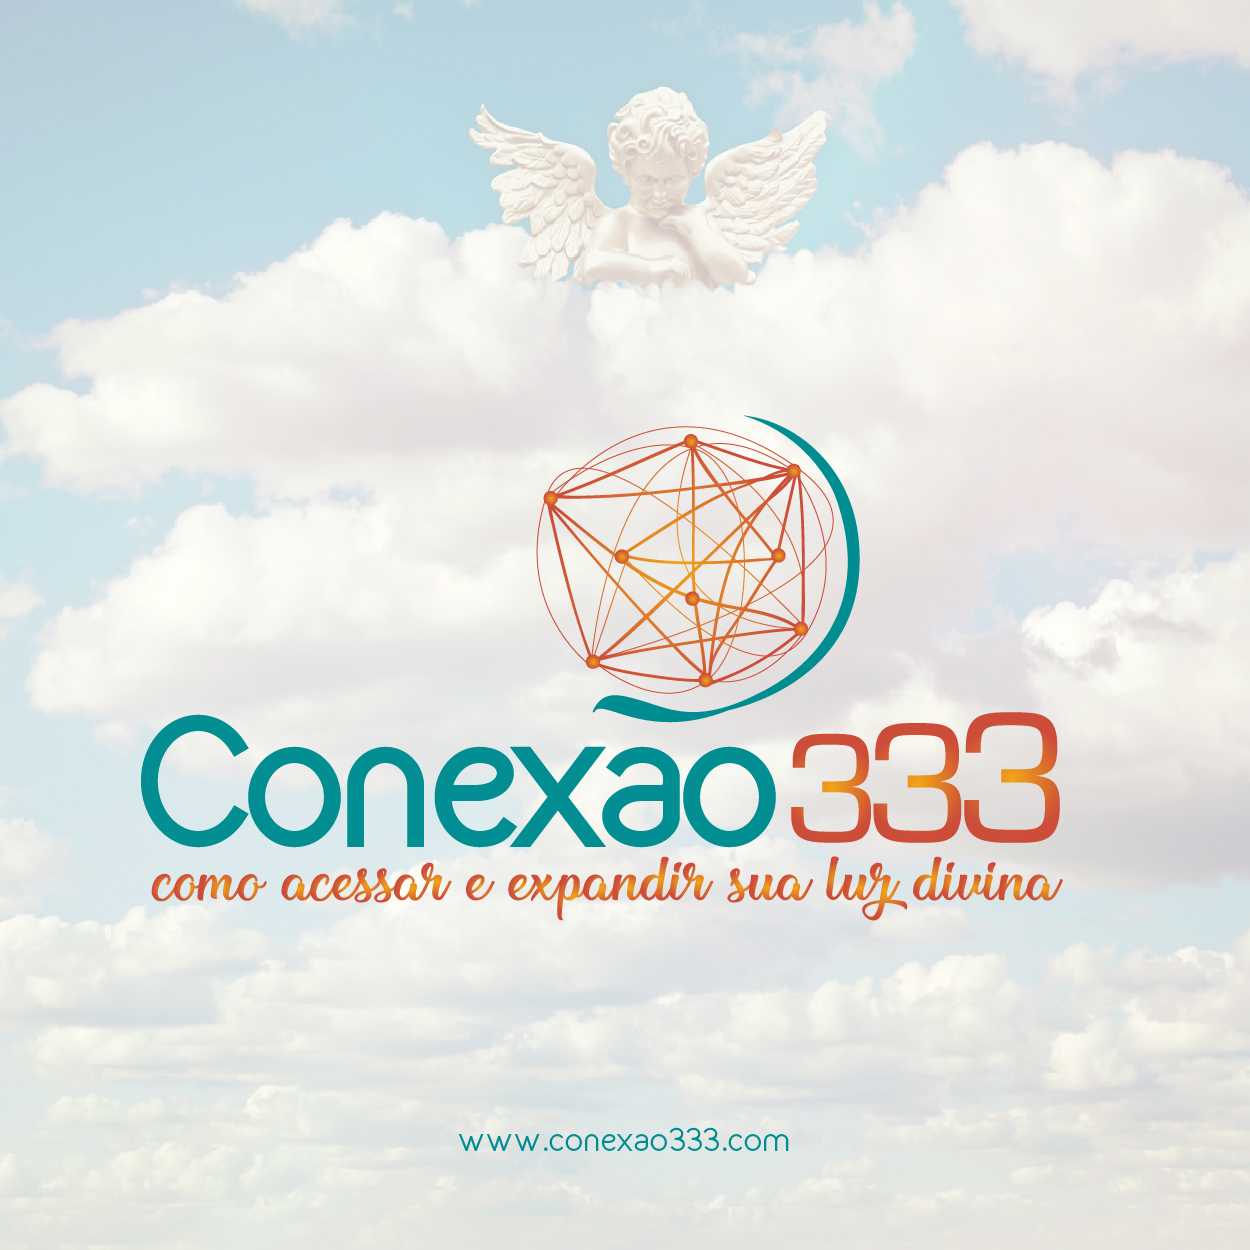 Conexao 333